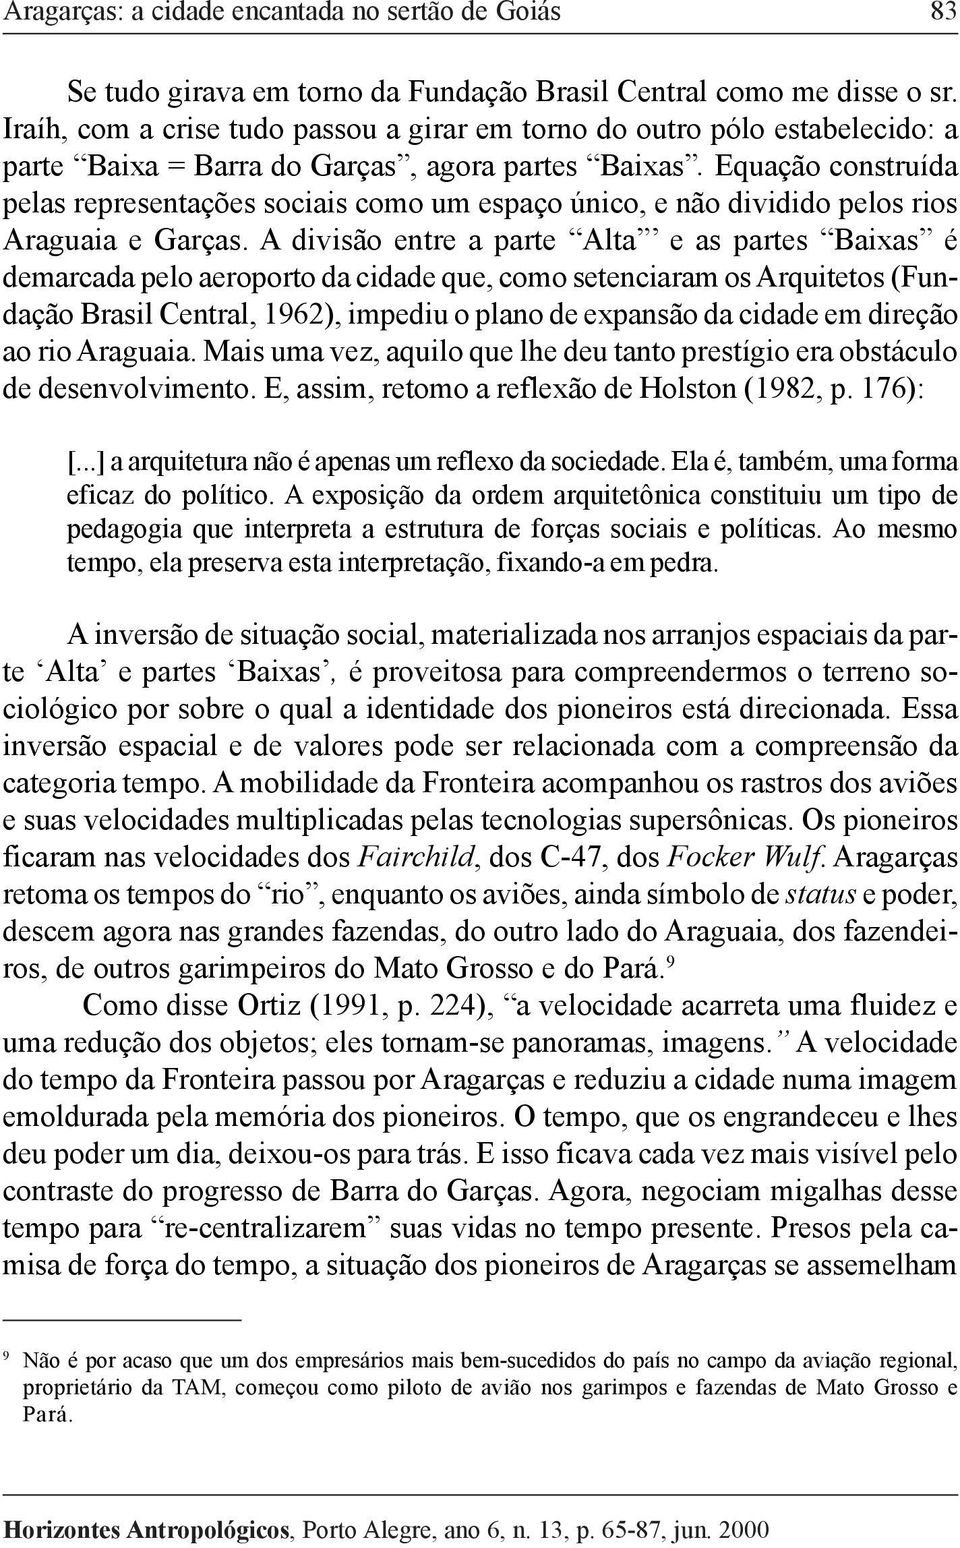 Equação construída pelas representações sociais como um espaço único, e não dividido pelos rios Araguaia e Garças.